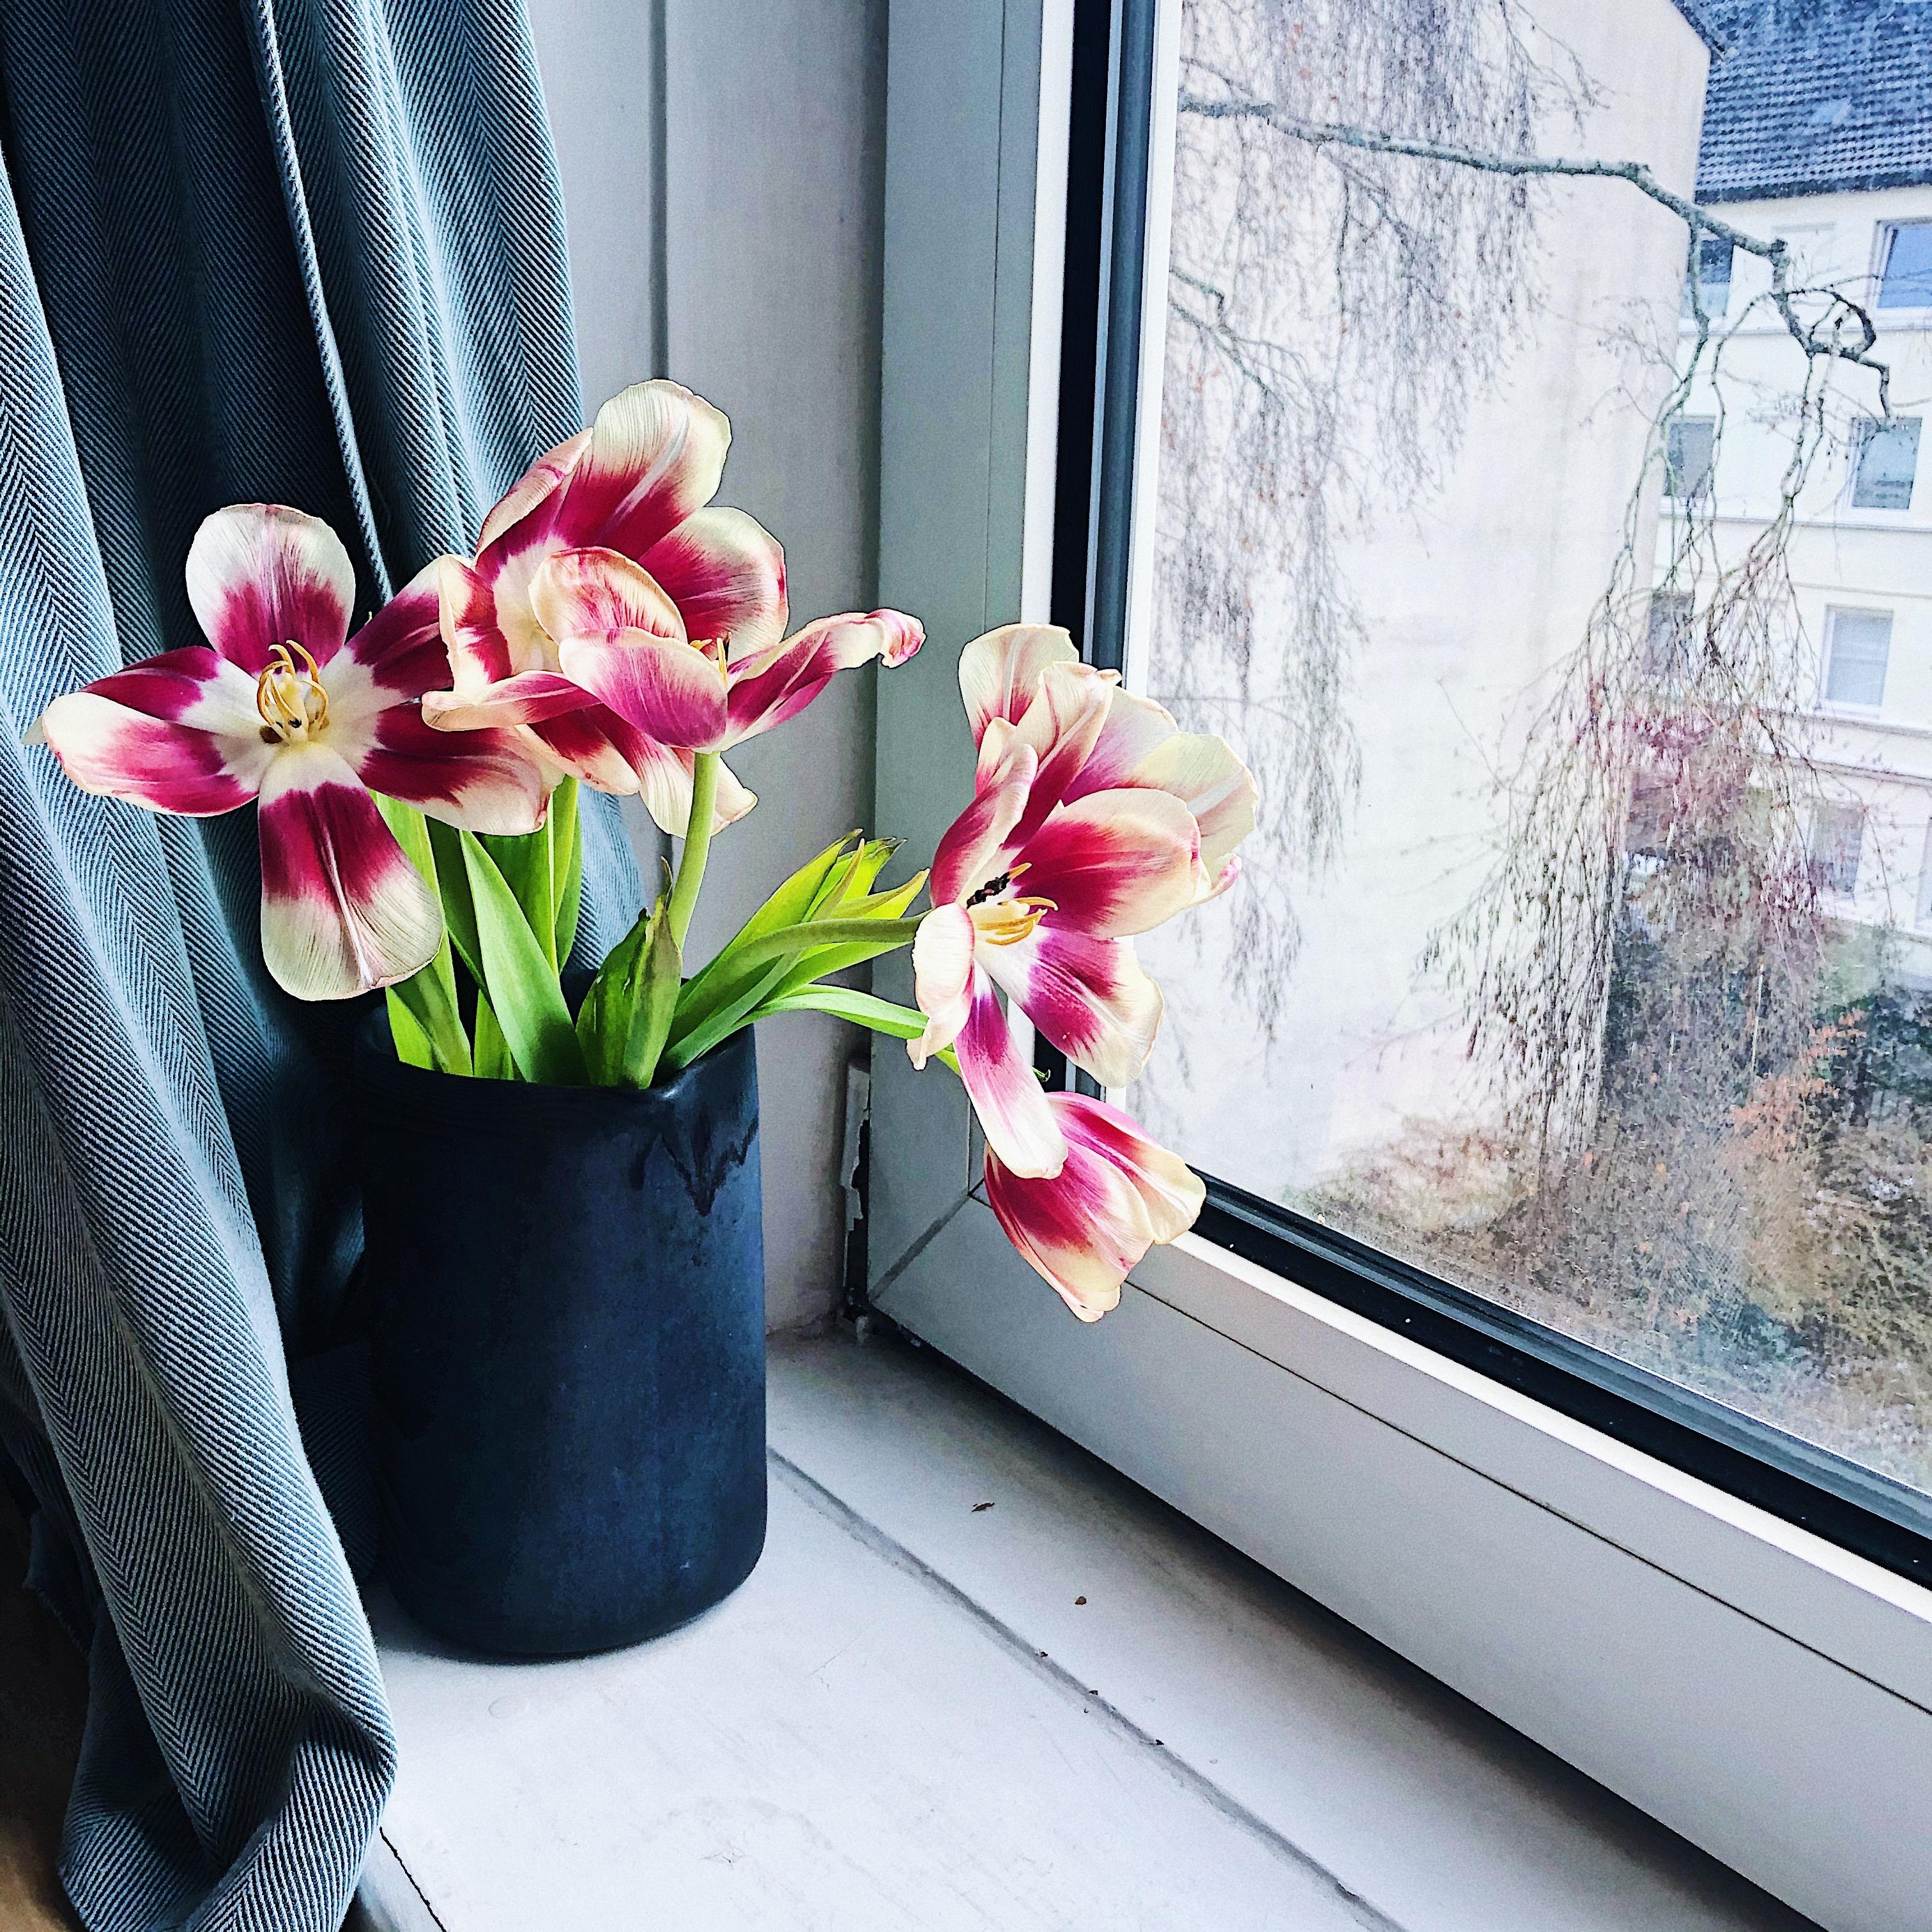 Blumen-Spam vom Allerfeinsten 🌷 Ich kann nicht anders, sie heben einfach meine Laune.
#Blumen #Tulpen #Ausblick 